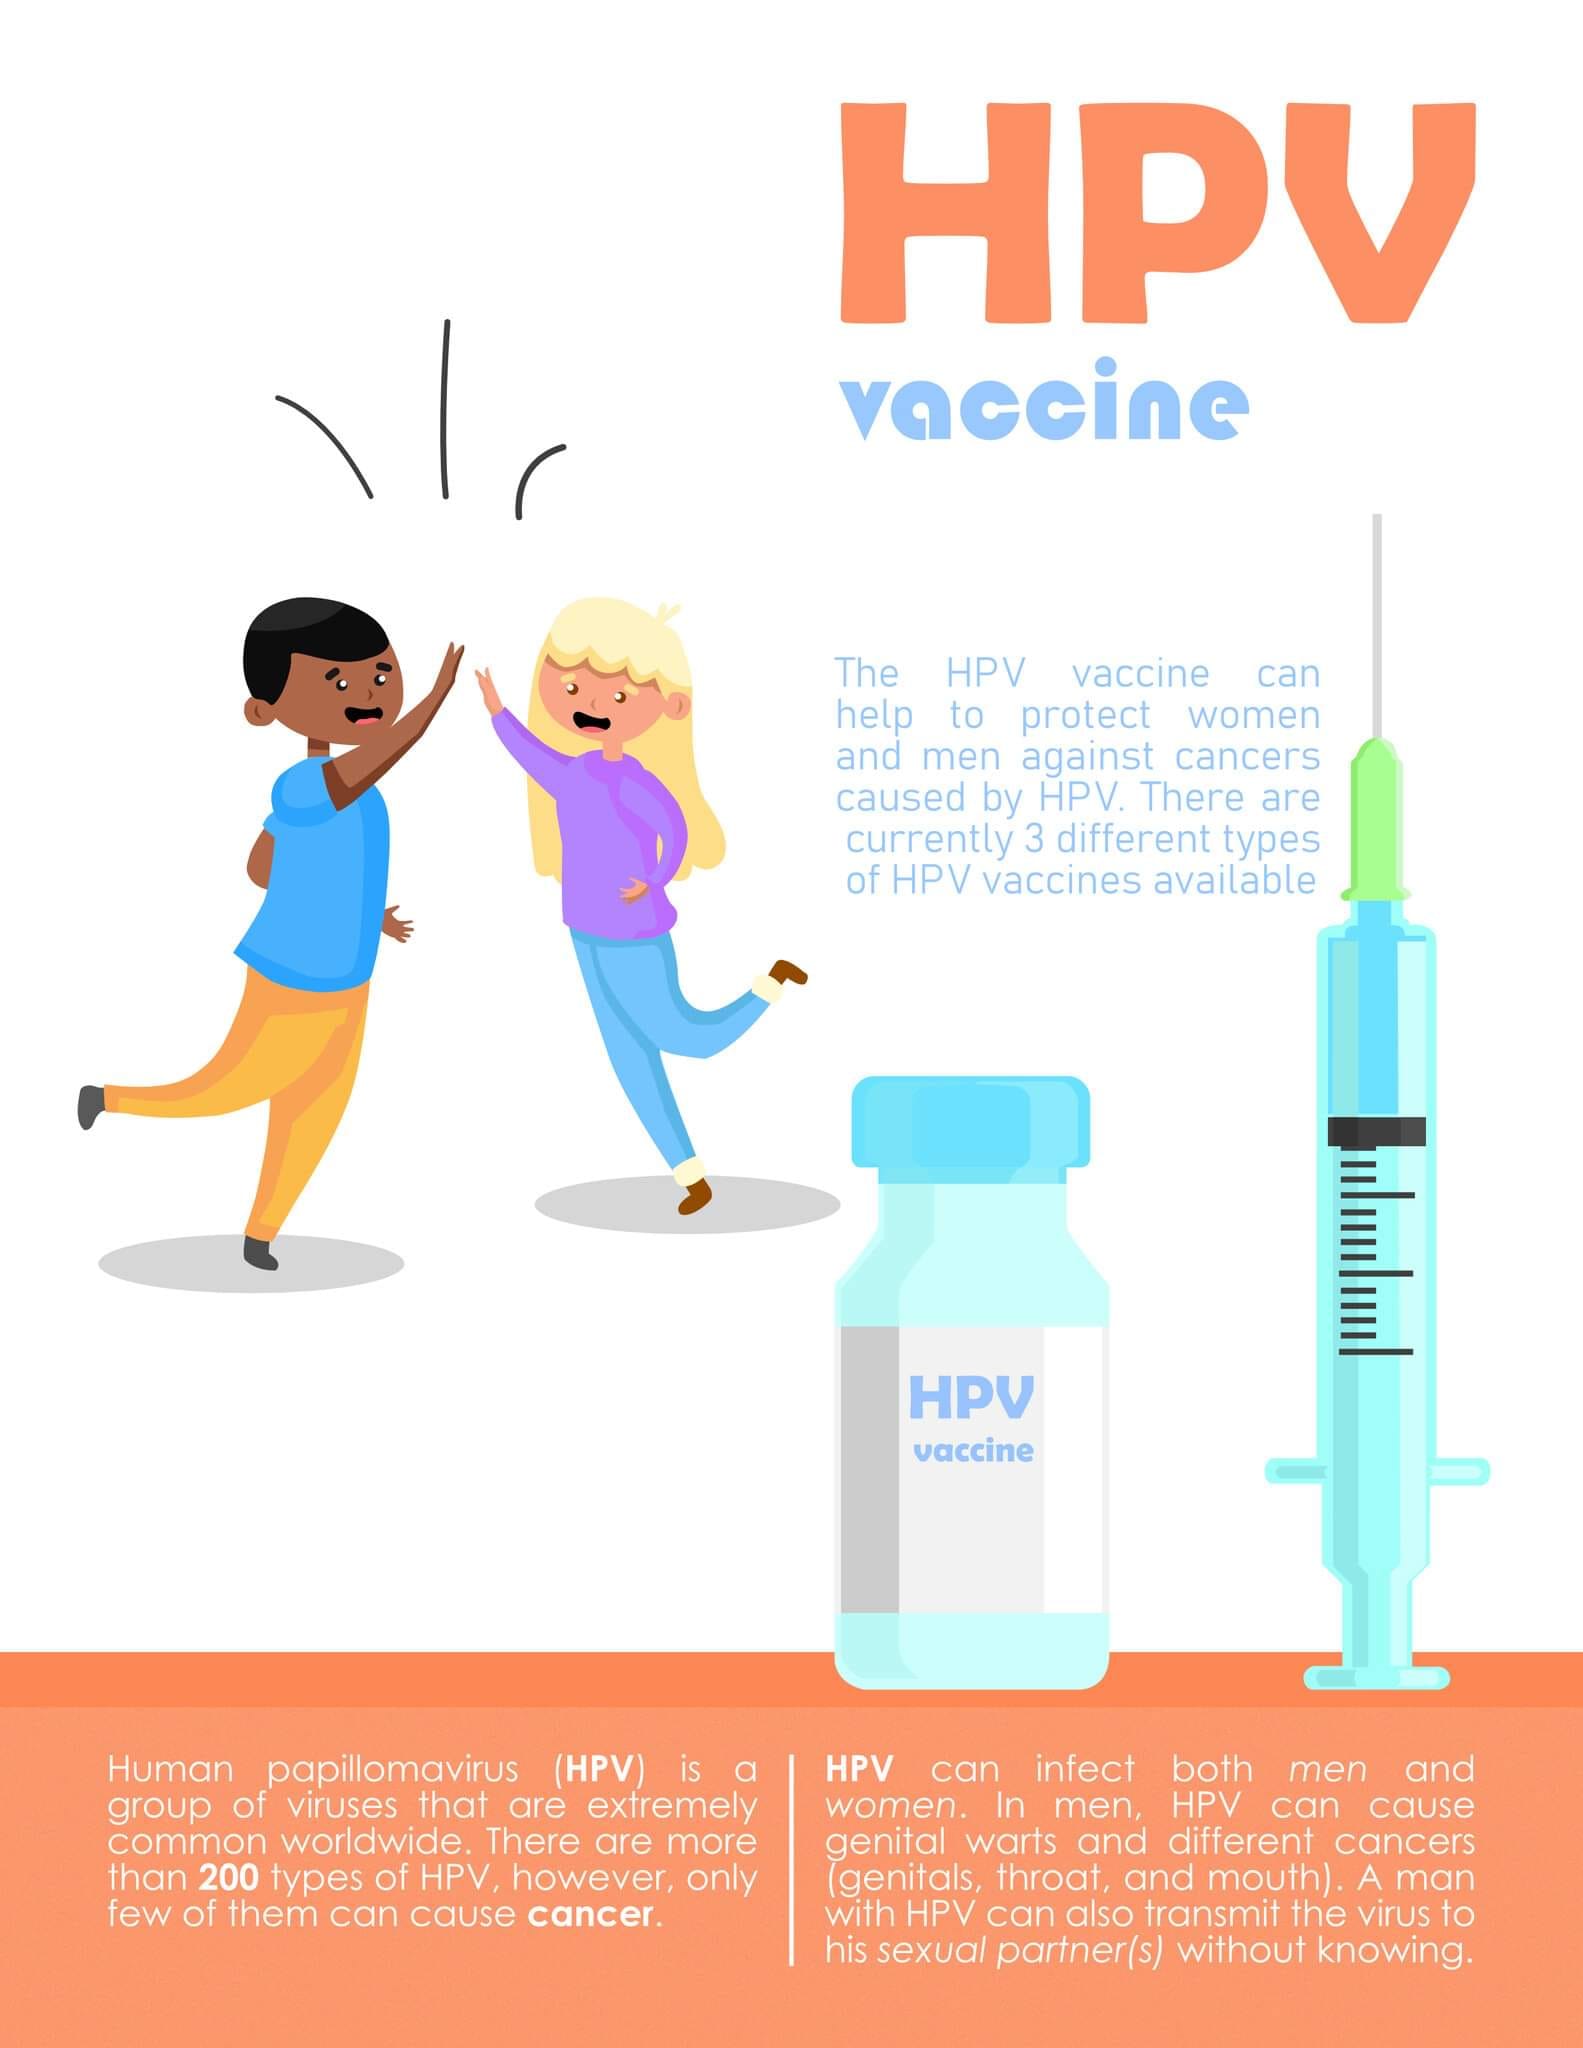 Δωρεάν ο εμβολιασμός κατά των HPV και στα αγόρια 9-18 ετών